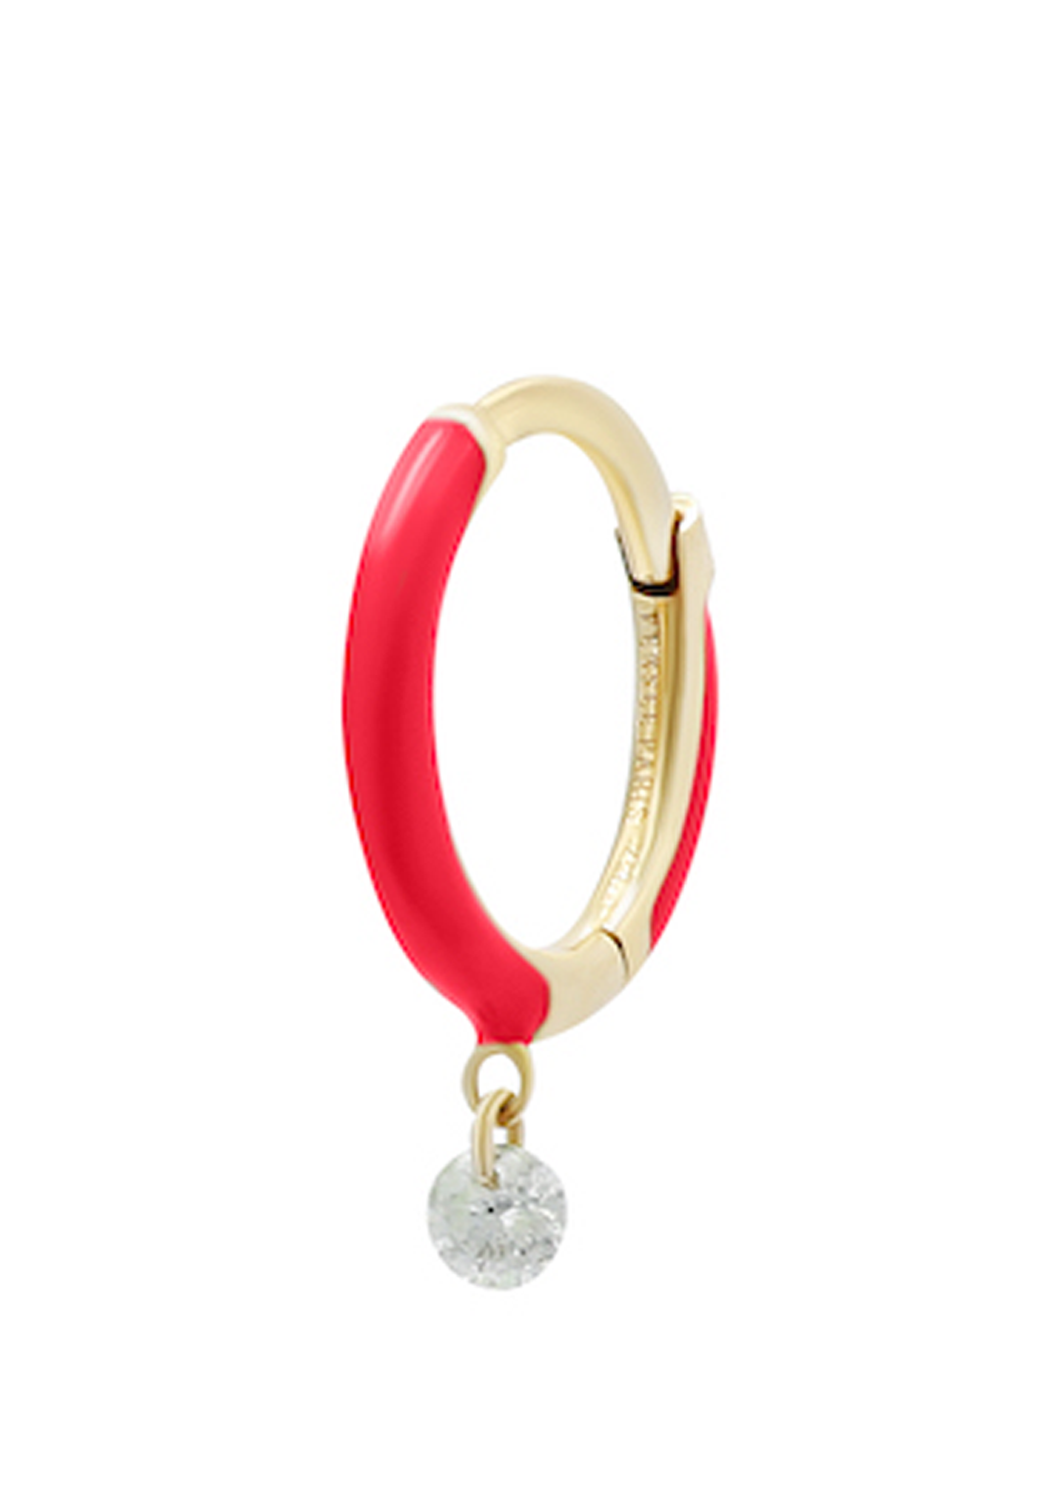 Persée Paris 18KYG Diamond & Pink Enamel Hoop Earring | Ref. EA82774-PK-YG | OsterJewelers.com